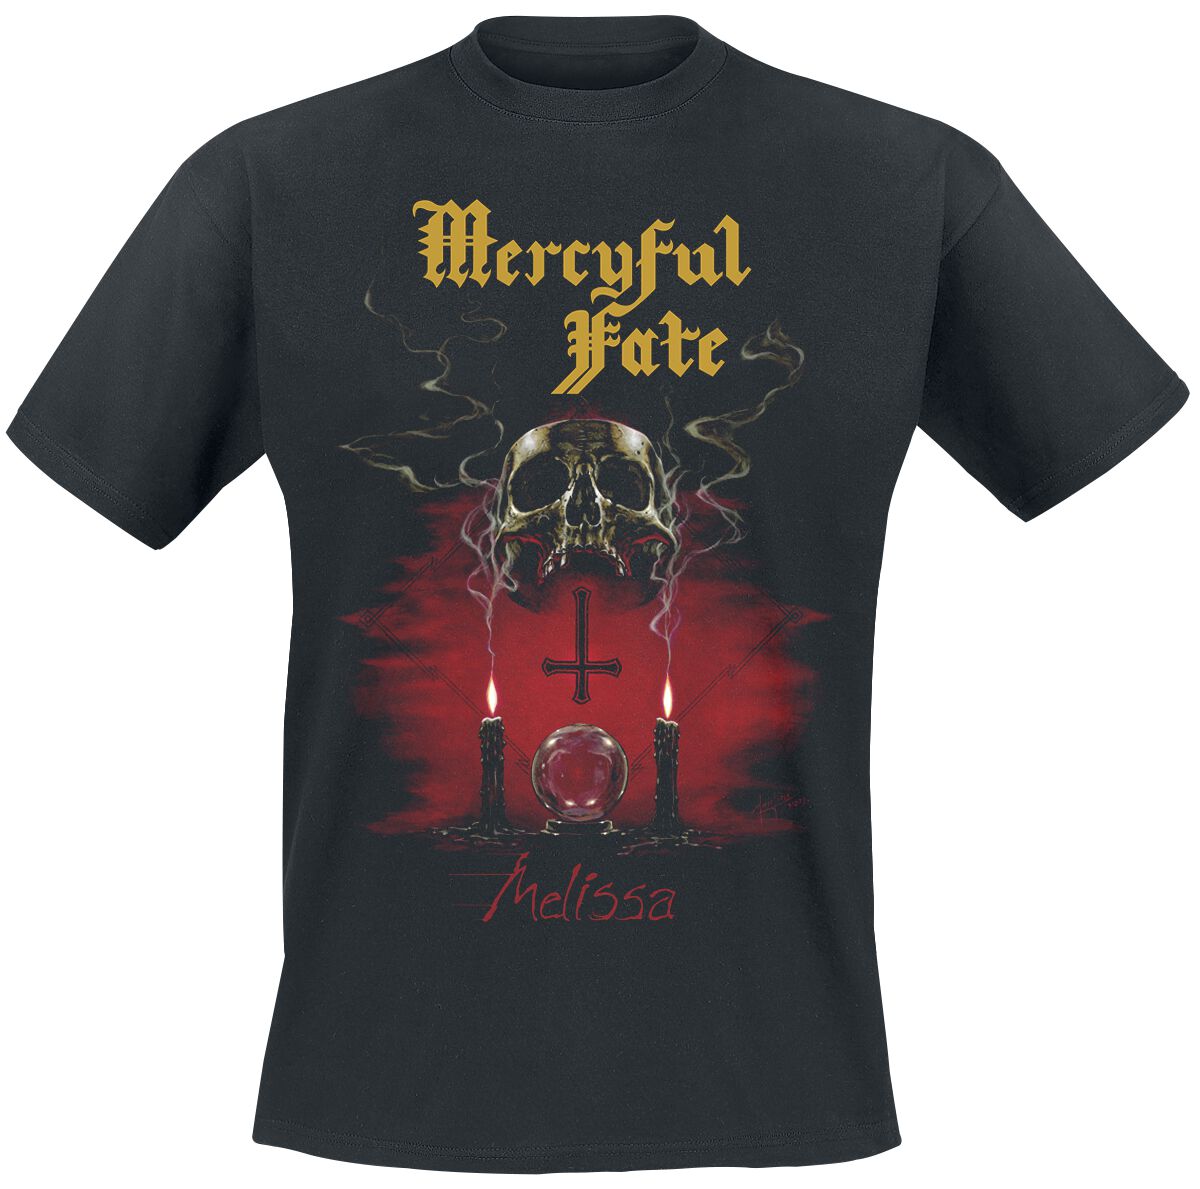 Mercyful Fate T-Shirt - Melissa (40th Anniversary) - M bis 3XL - für Männer - Größe M - schwarz  - Lizenziertes Merchandise!